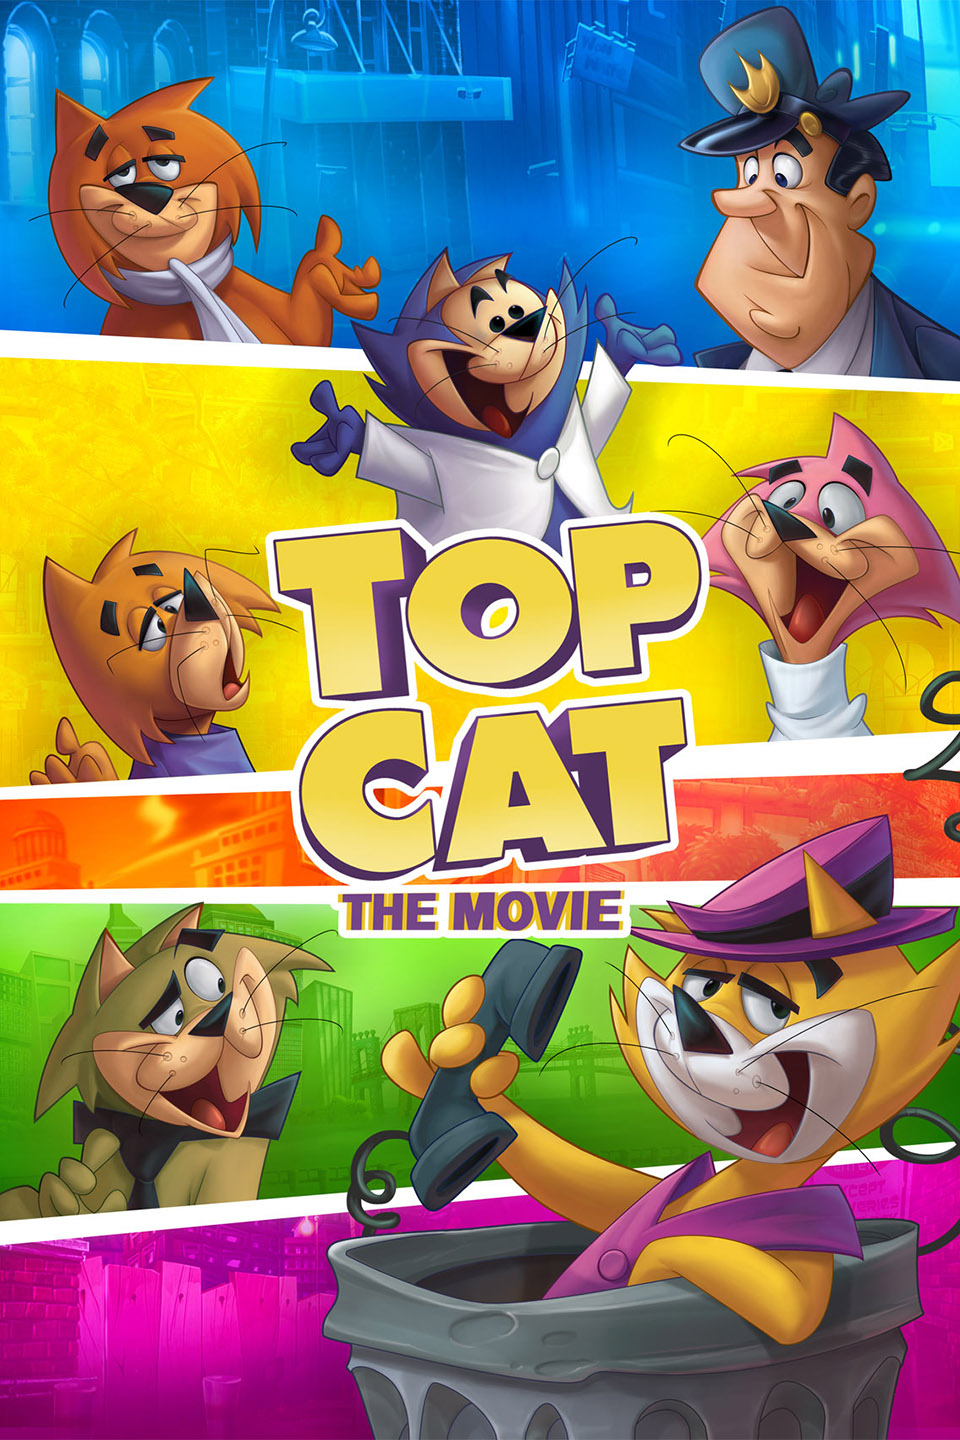 Top Cat: The Movie | Warner Bros. Entertainment Wiki | Fandom